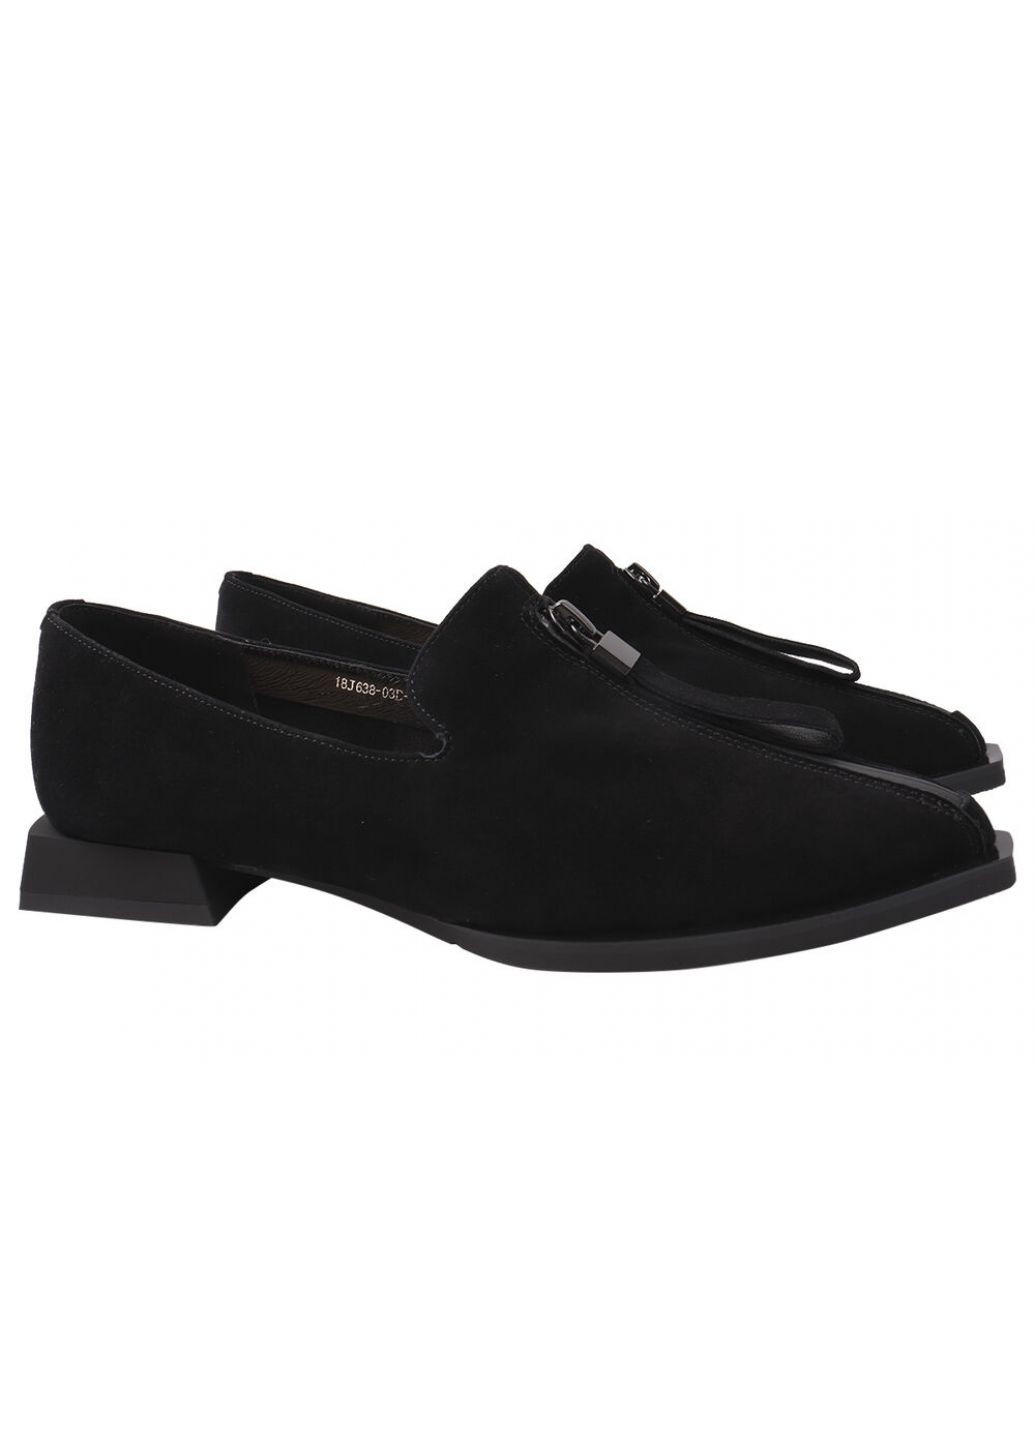 Туфлі жіночі з натуральної замші, на низькому ходу, чорні, Brocoly 310-21dtc (257426172)